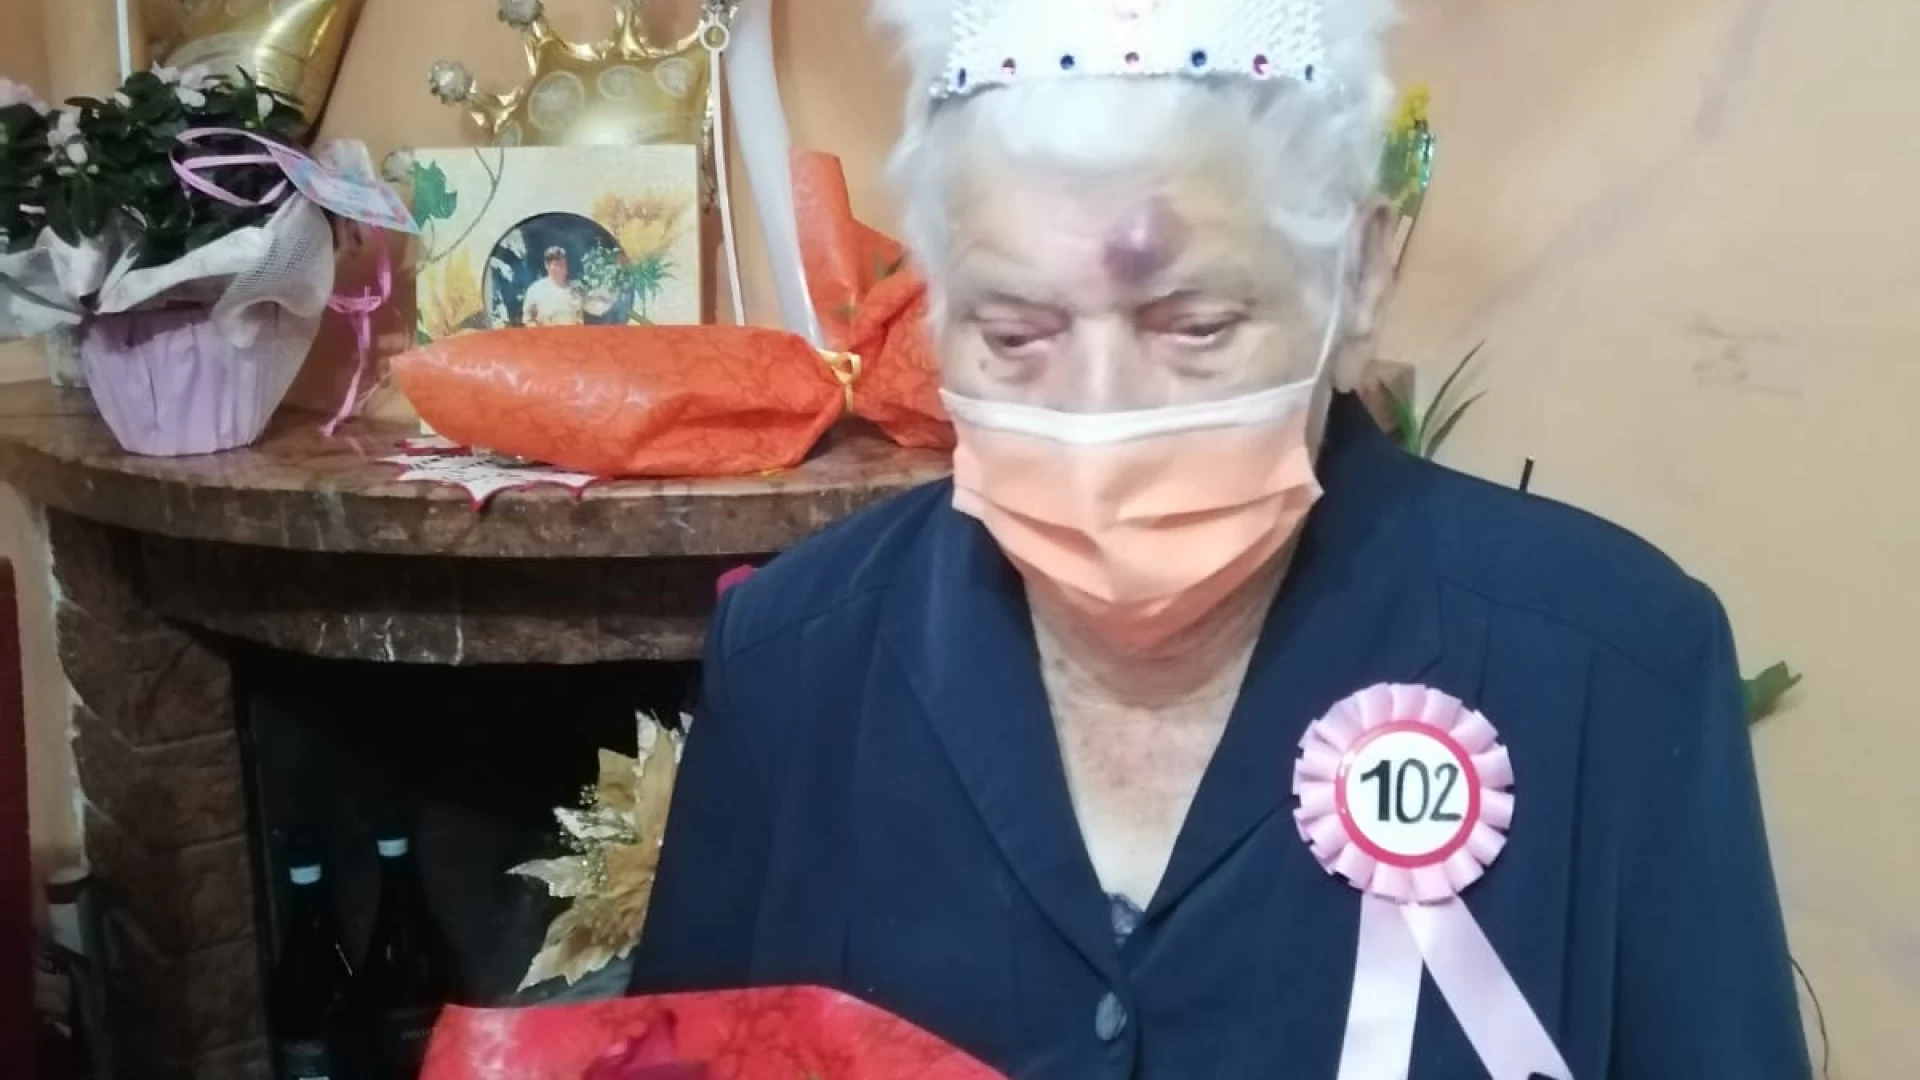 Rionero Sannitico: Lucia Di Franco festeggia l'incredibile traguardo di 102 anni.